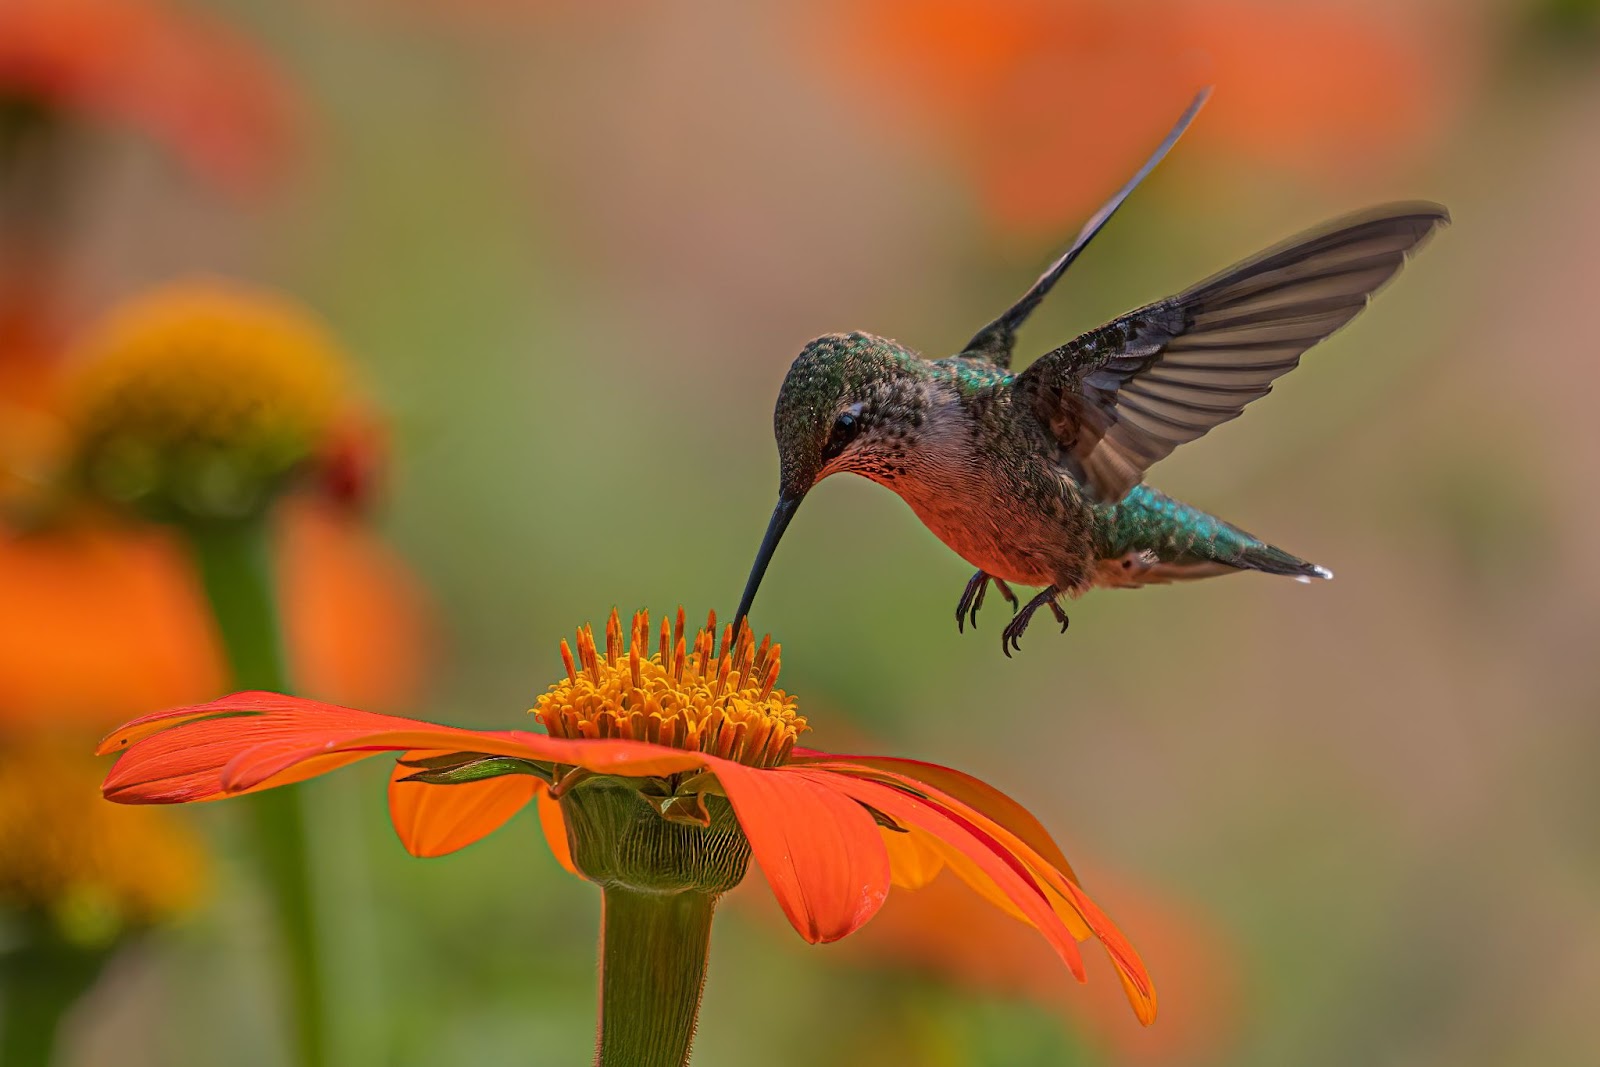 A hummingbird approaching a flower's nectar